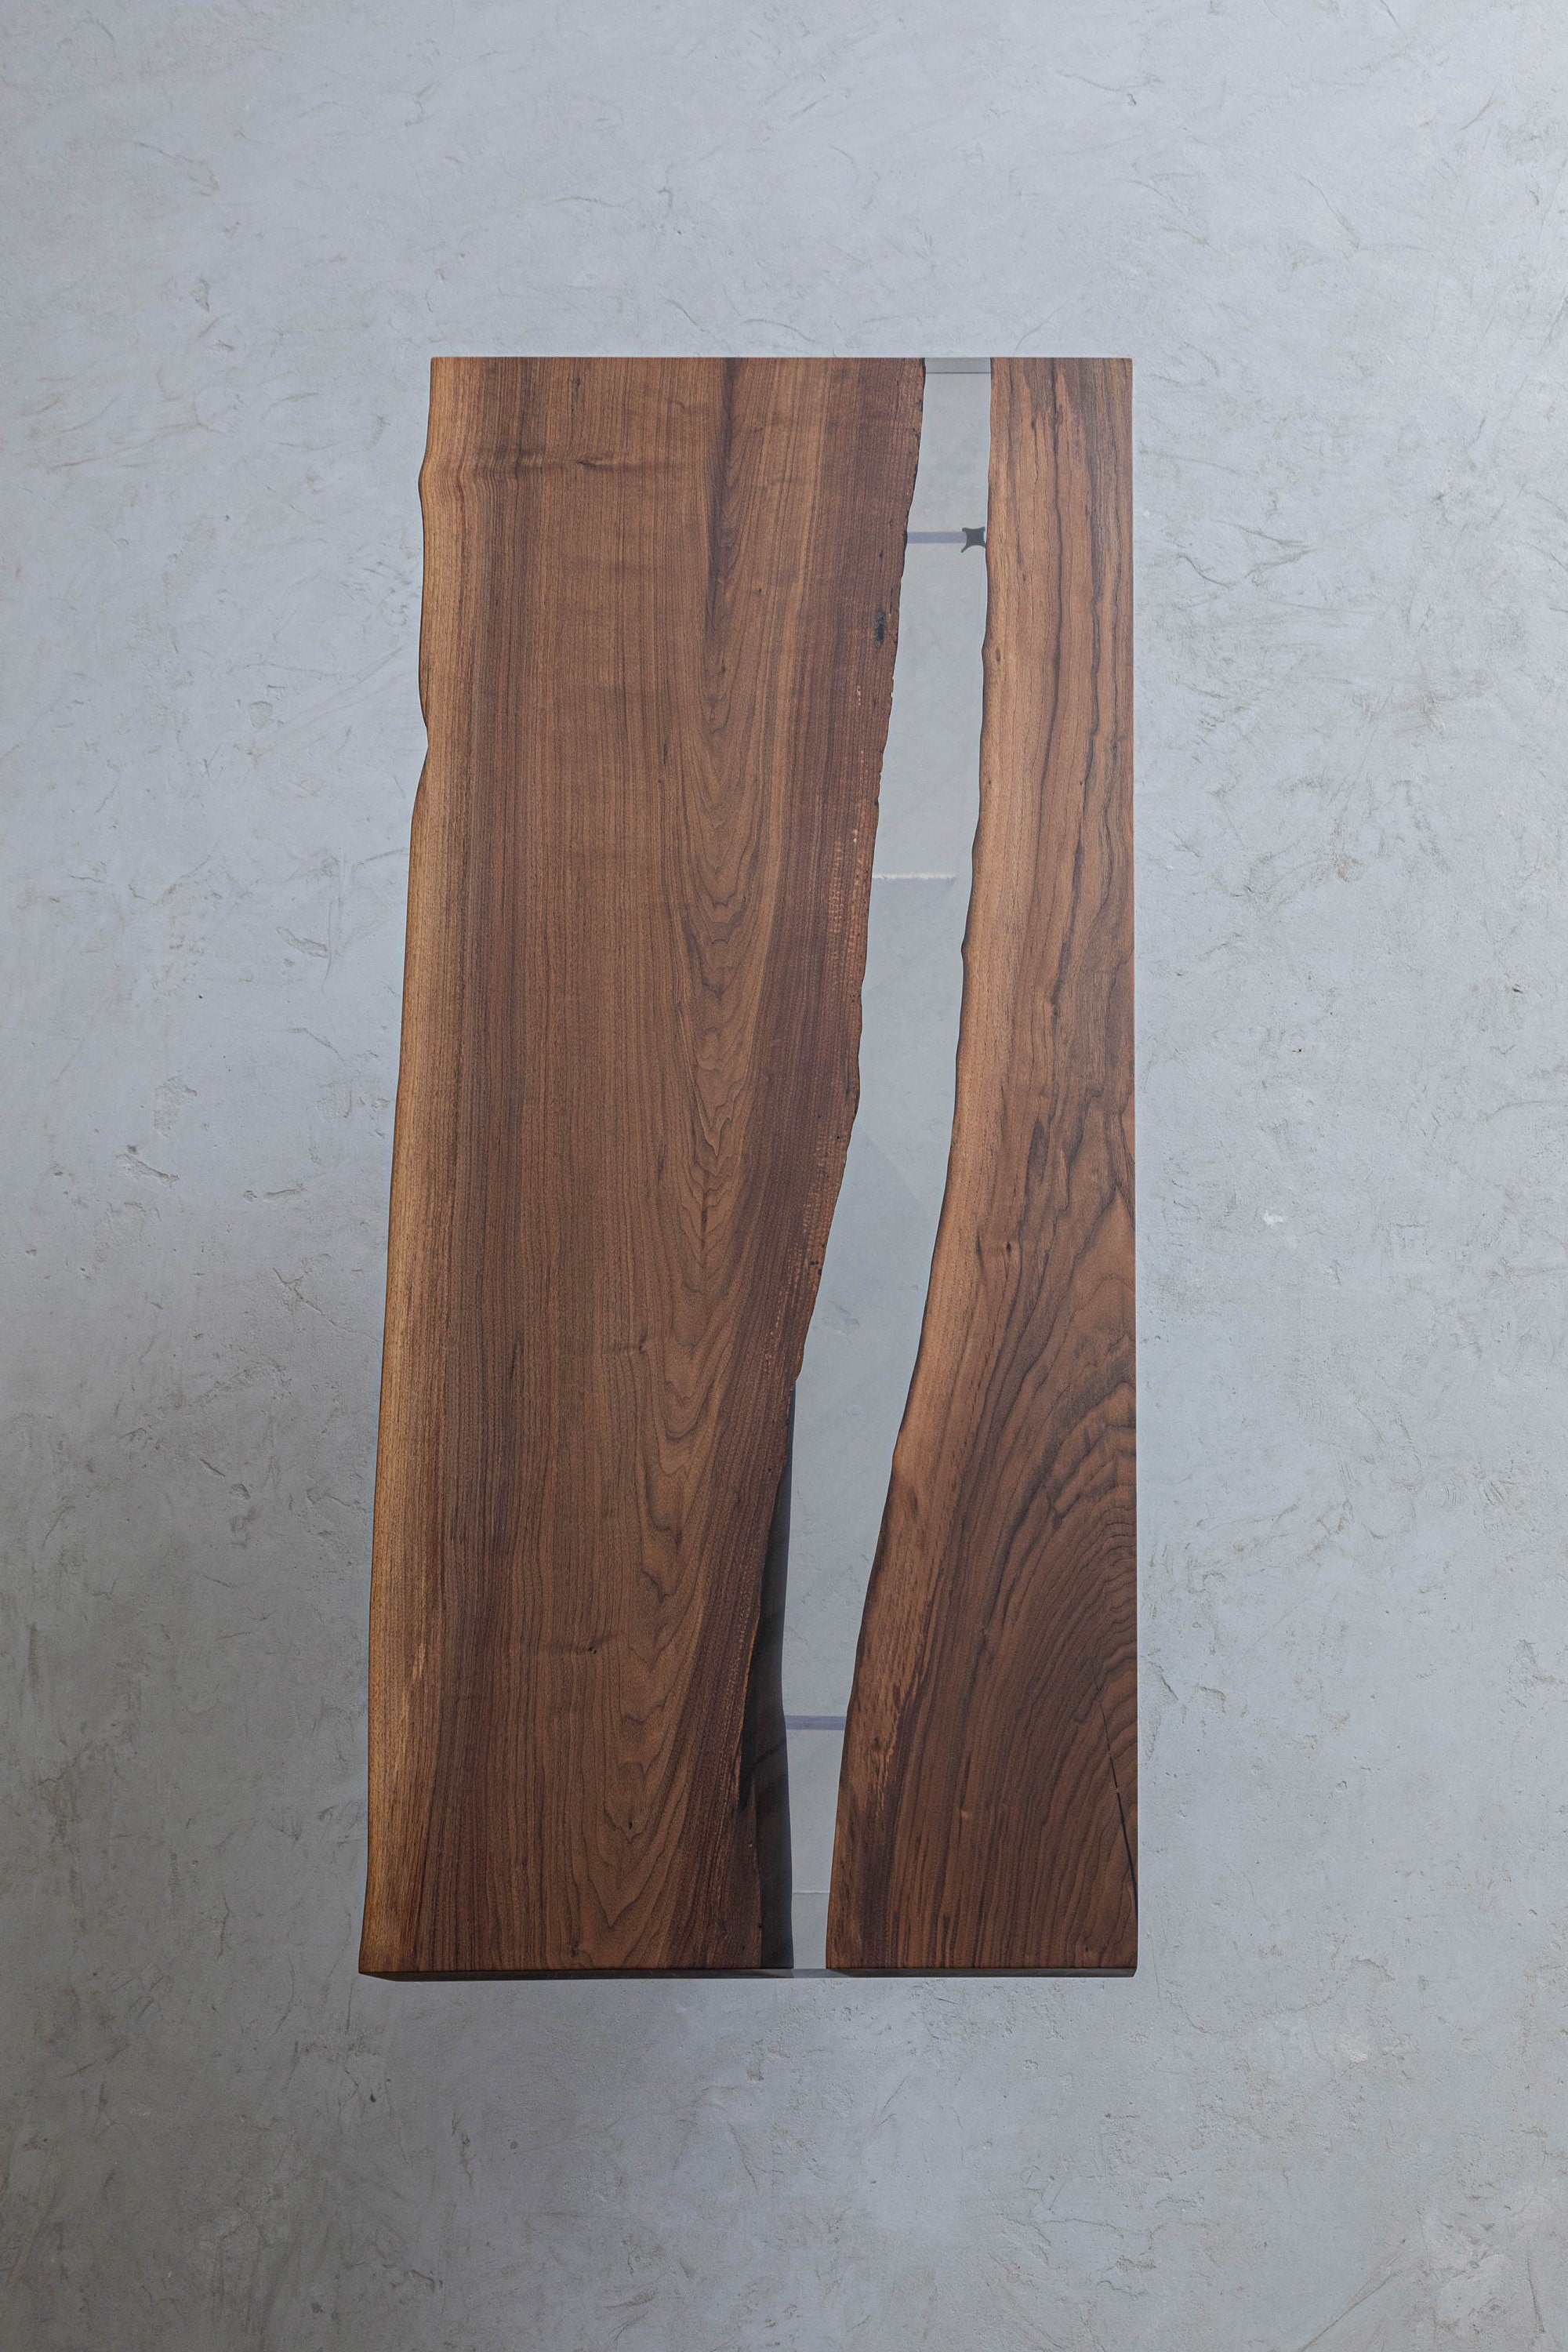 Table époxy faite à la main, Transparent Furniture Vivid Edge, Table spéciale en résine de bois époxy